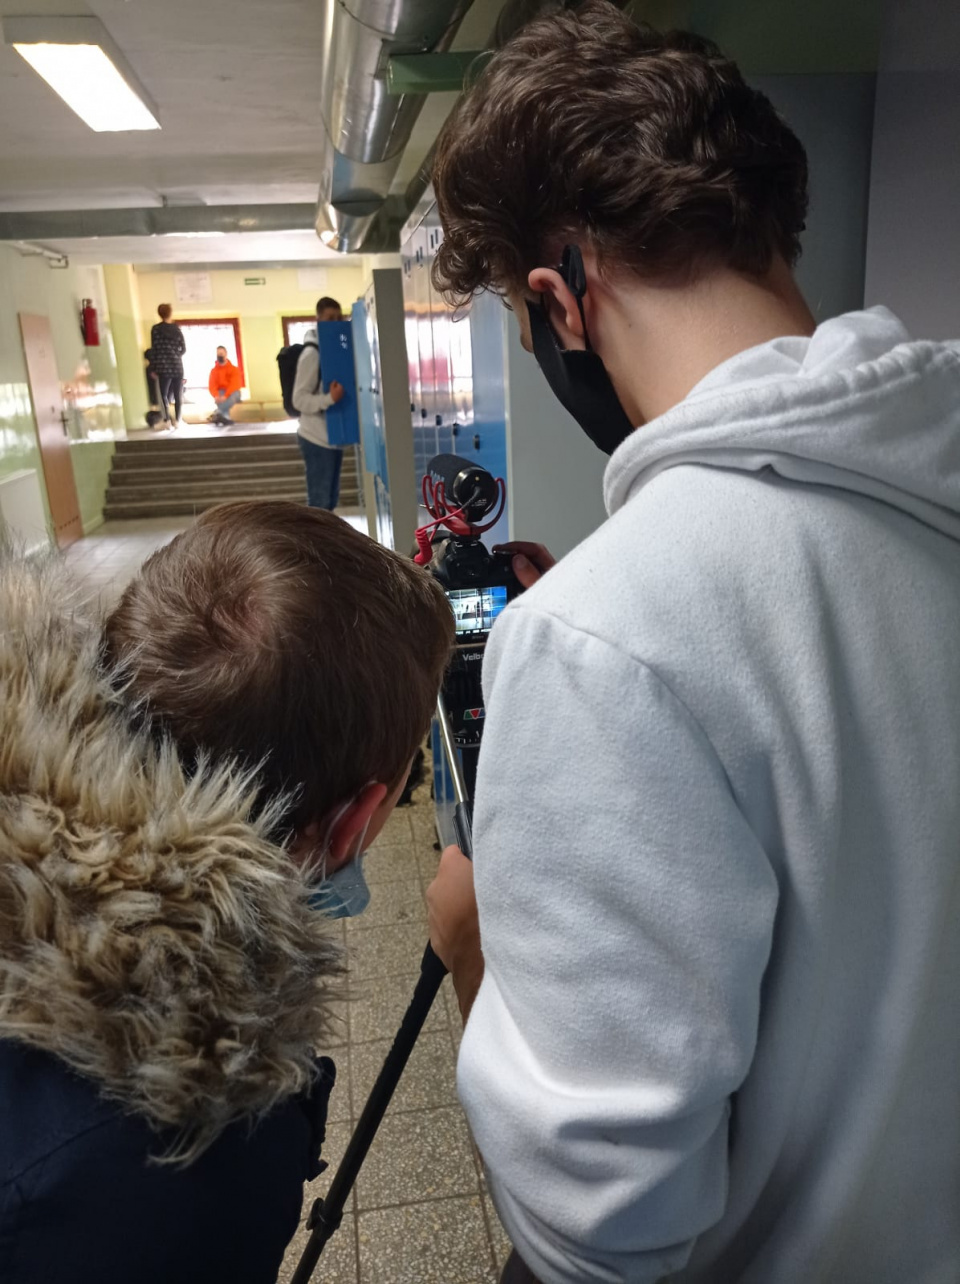 Opolscy uczniowie nagrywają filmiki [fot. archiwum prywatne]